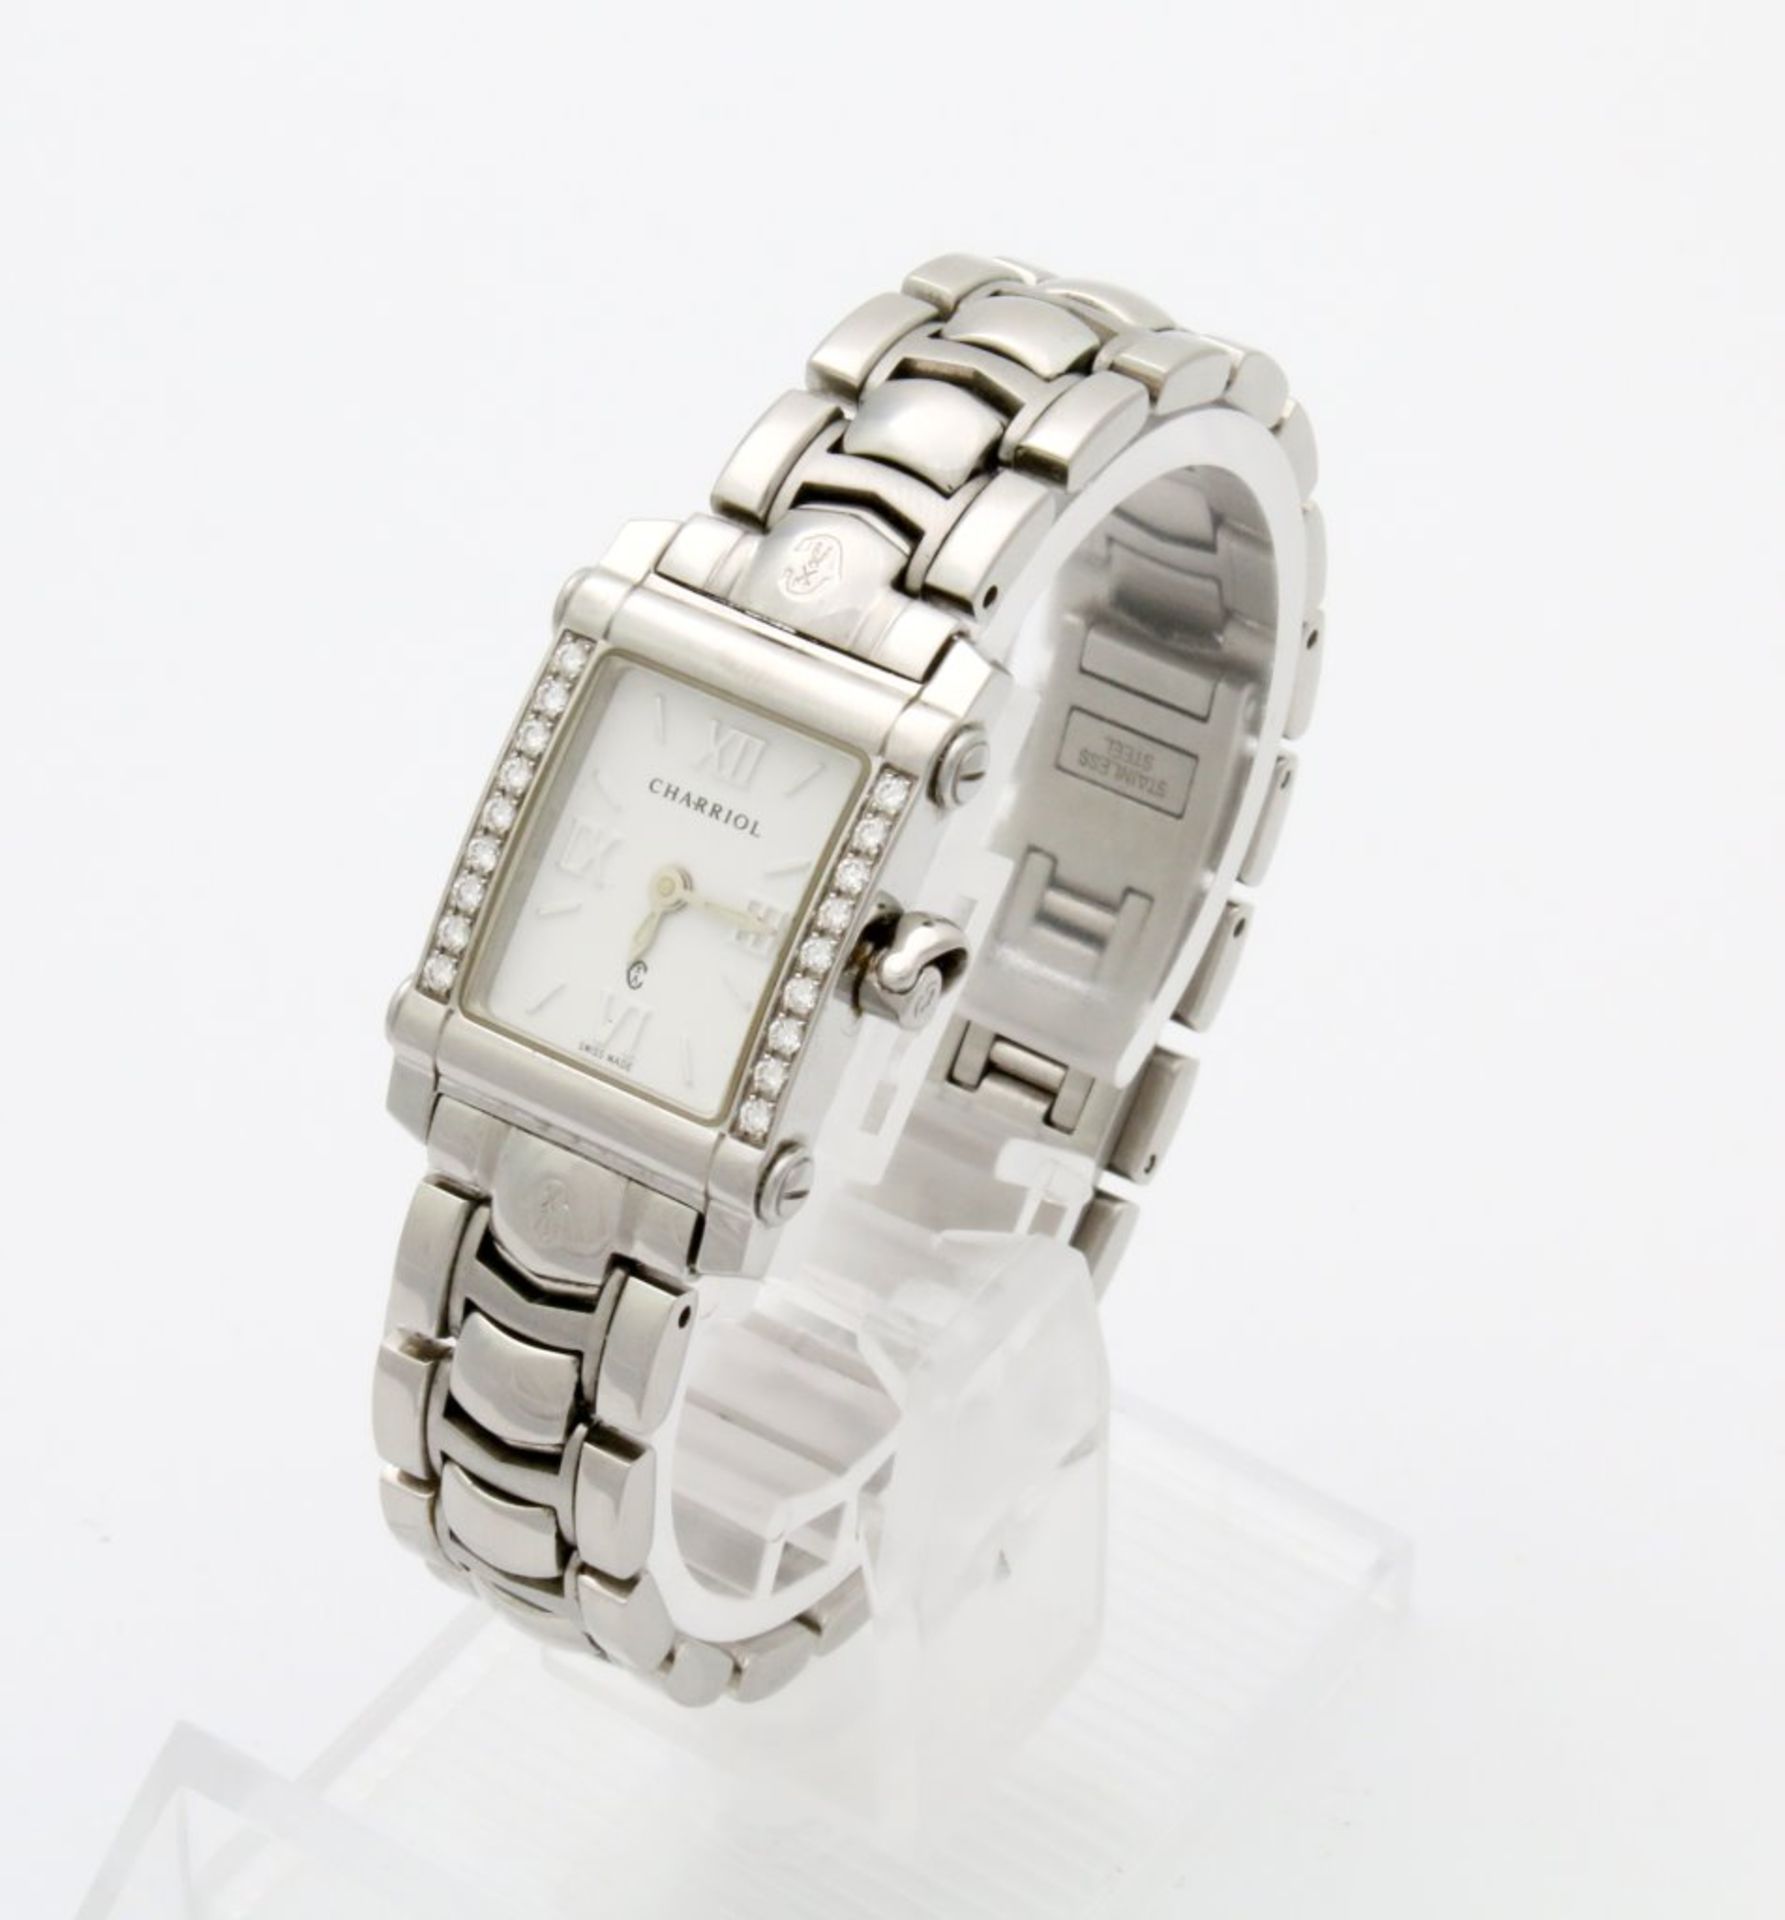 Armbanduhr Carriol Columbus mit Brillanten, Ref. 9012911 Quarzwerk, Edelstahlgehäuse, Maße: 18 x - Bild 3 aus 5